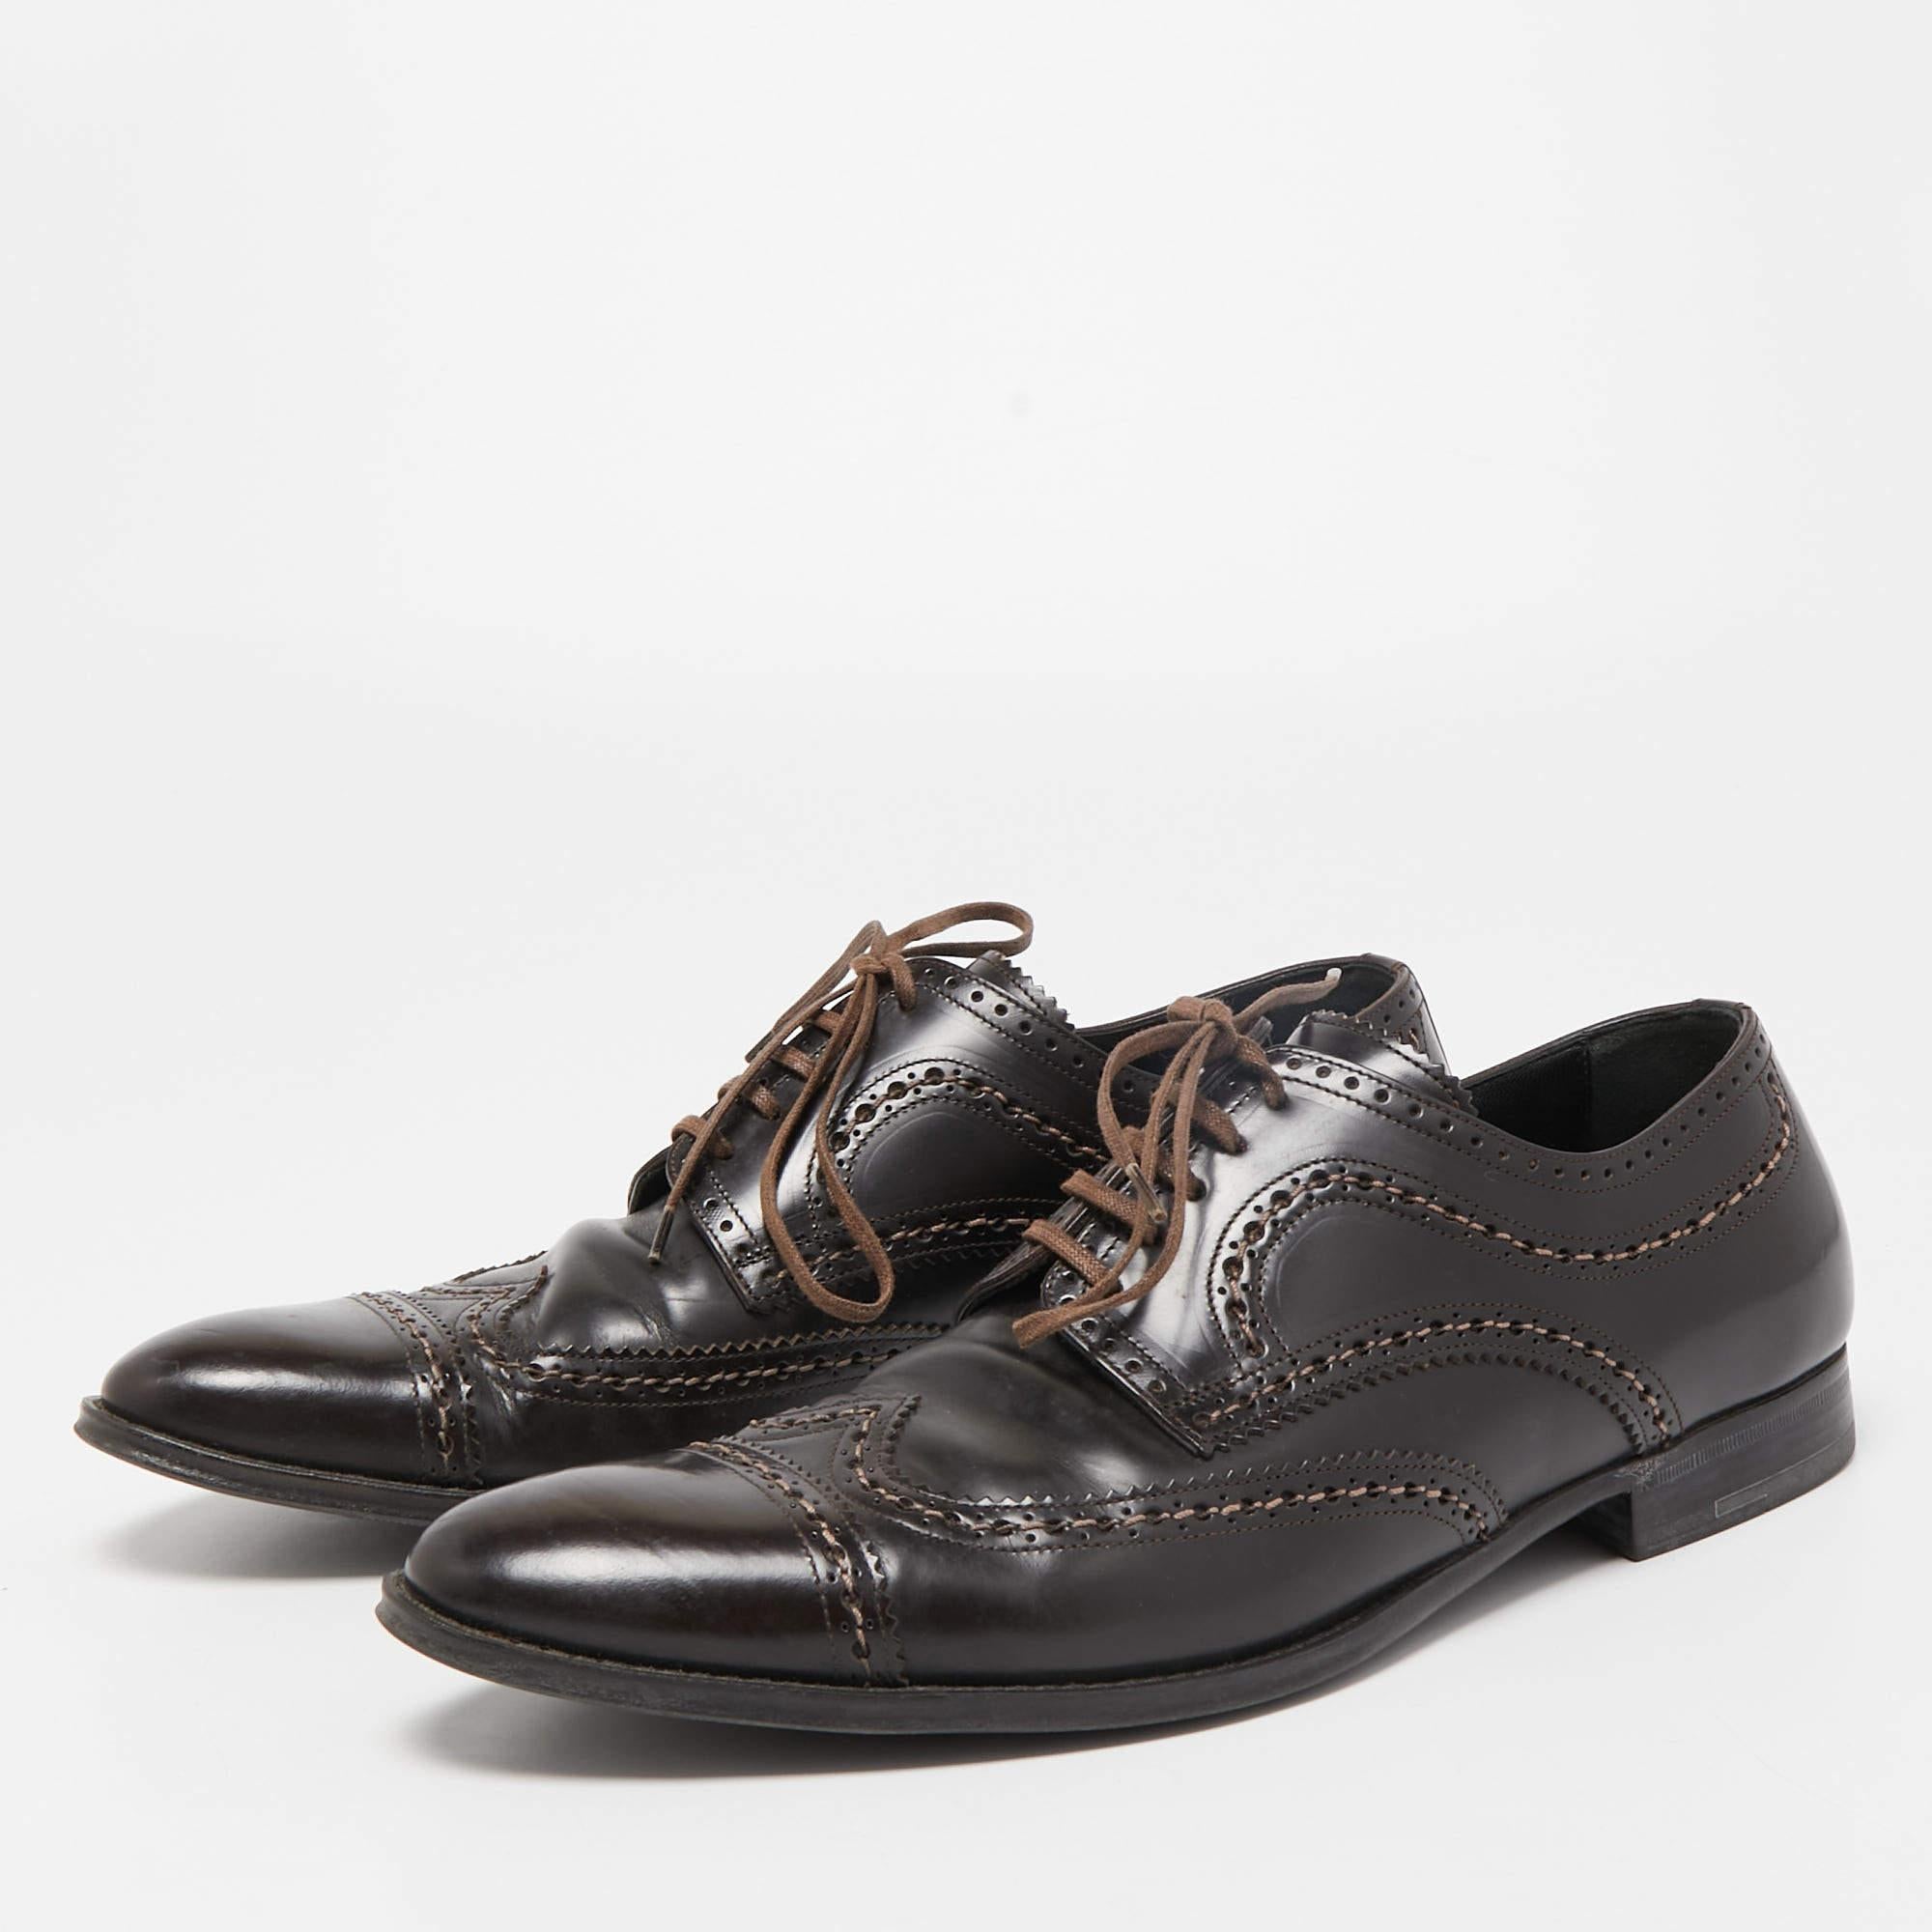 Mit diesen Designer-Derby-Schuhen von Louis Vuitton legen Sie einen Zahn zu. Die braunen Herrenschuhe aus Leder haben einen Schnürverschluss und niedrige Absätze.

